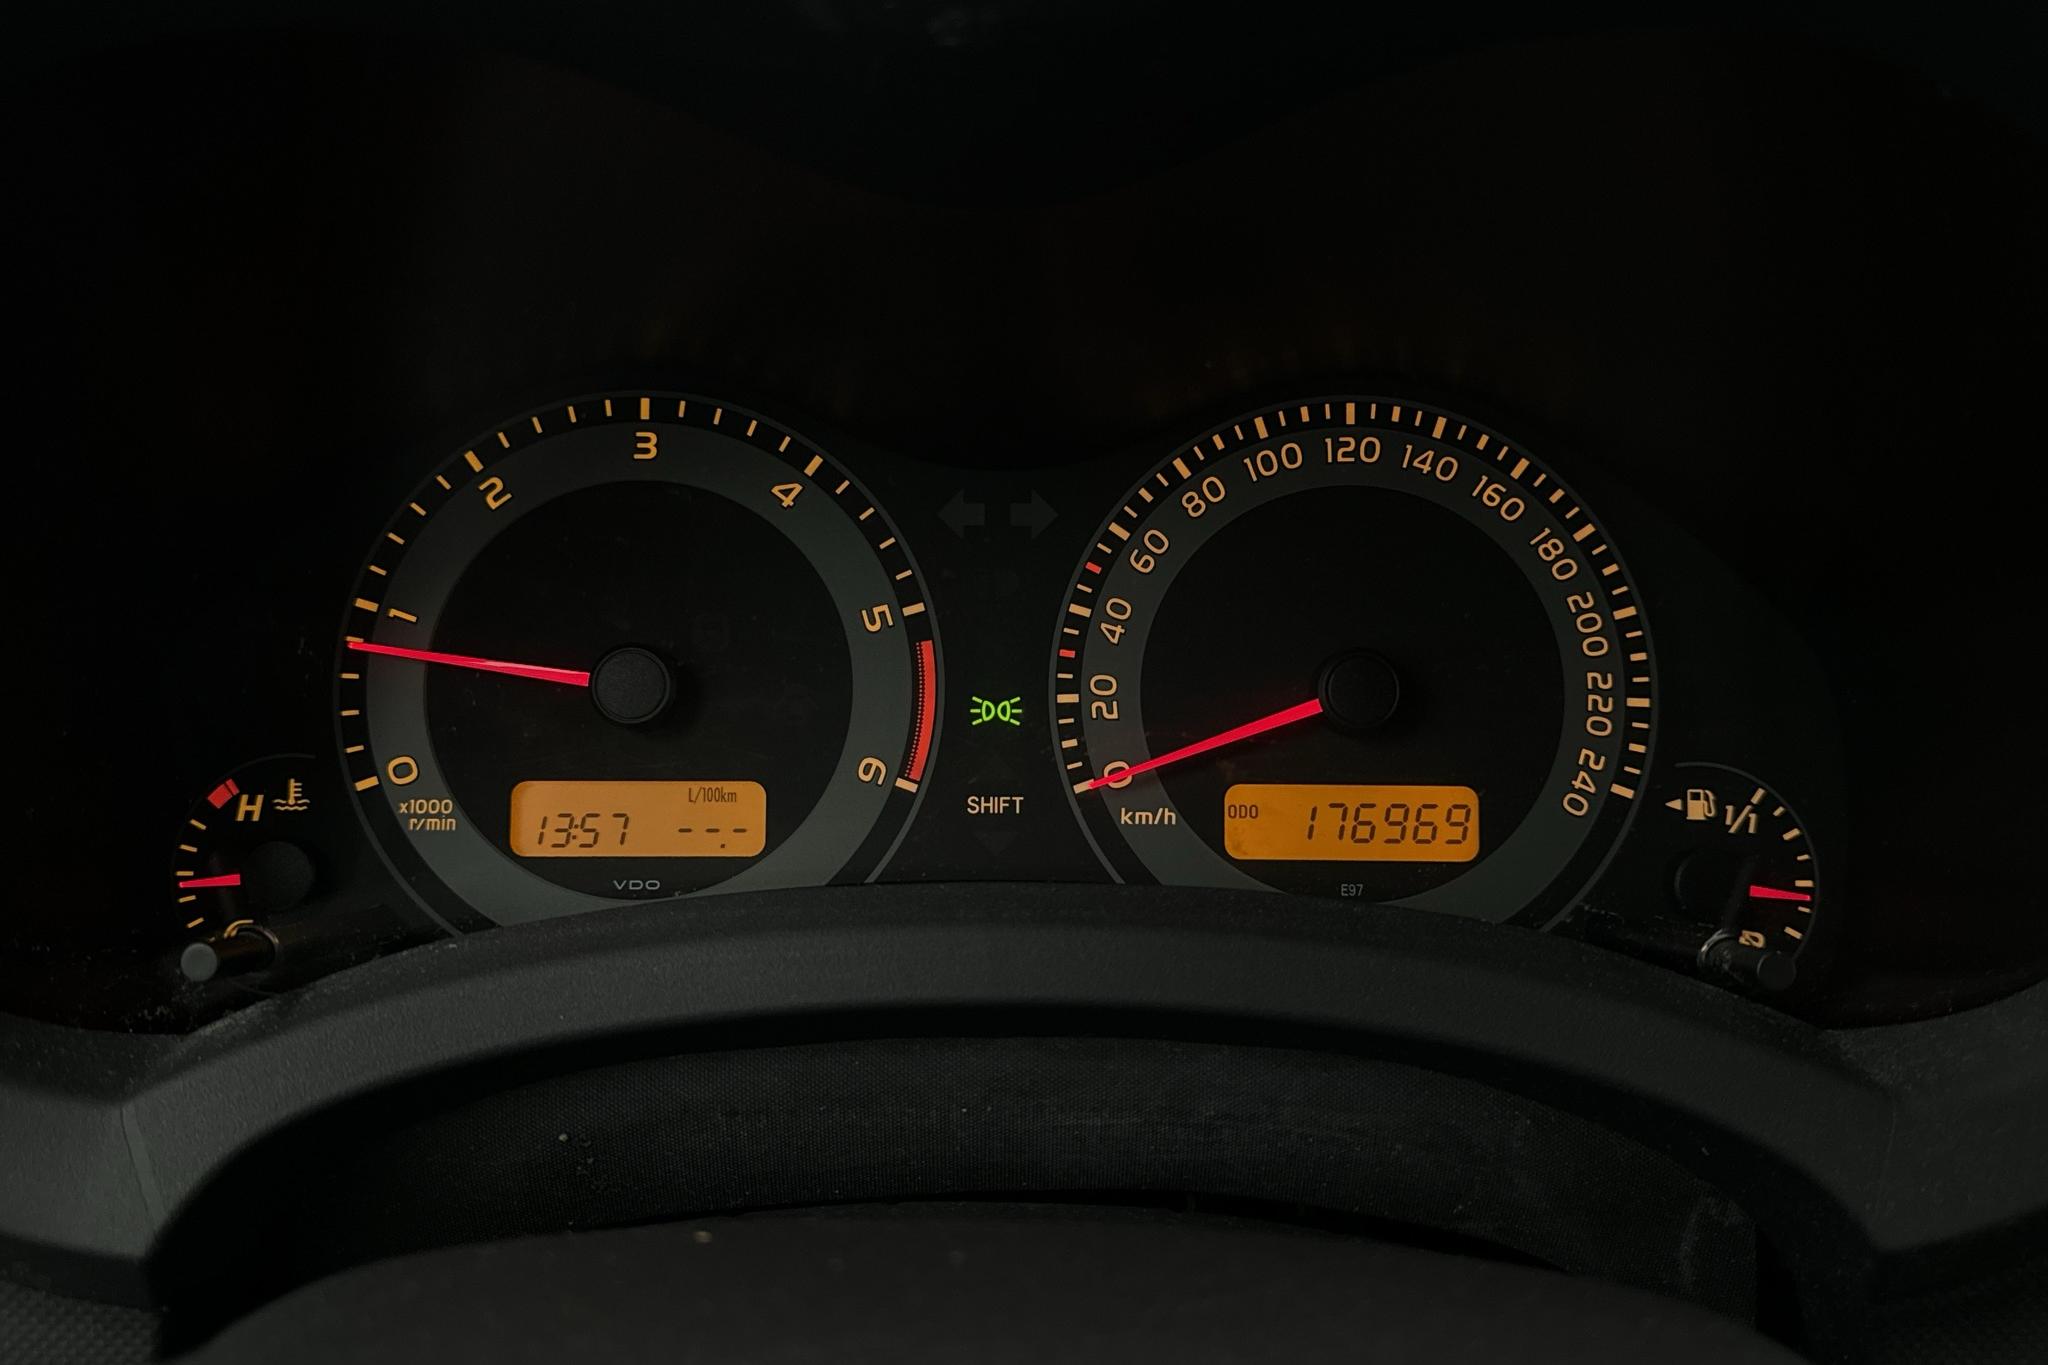 Toyota Auris 1.4 D-4D 5dr (90hk) - 176 970 km - Manuaalinen - Dark Red - 2012